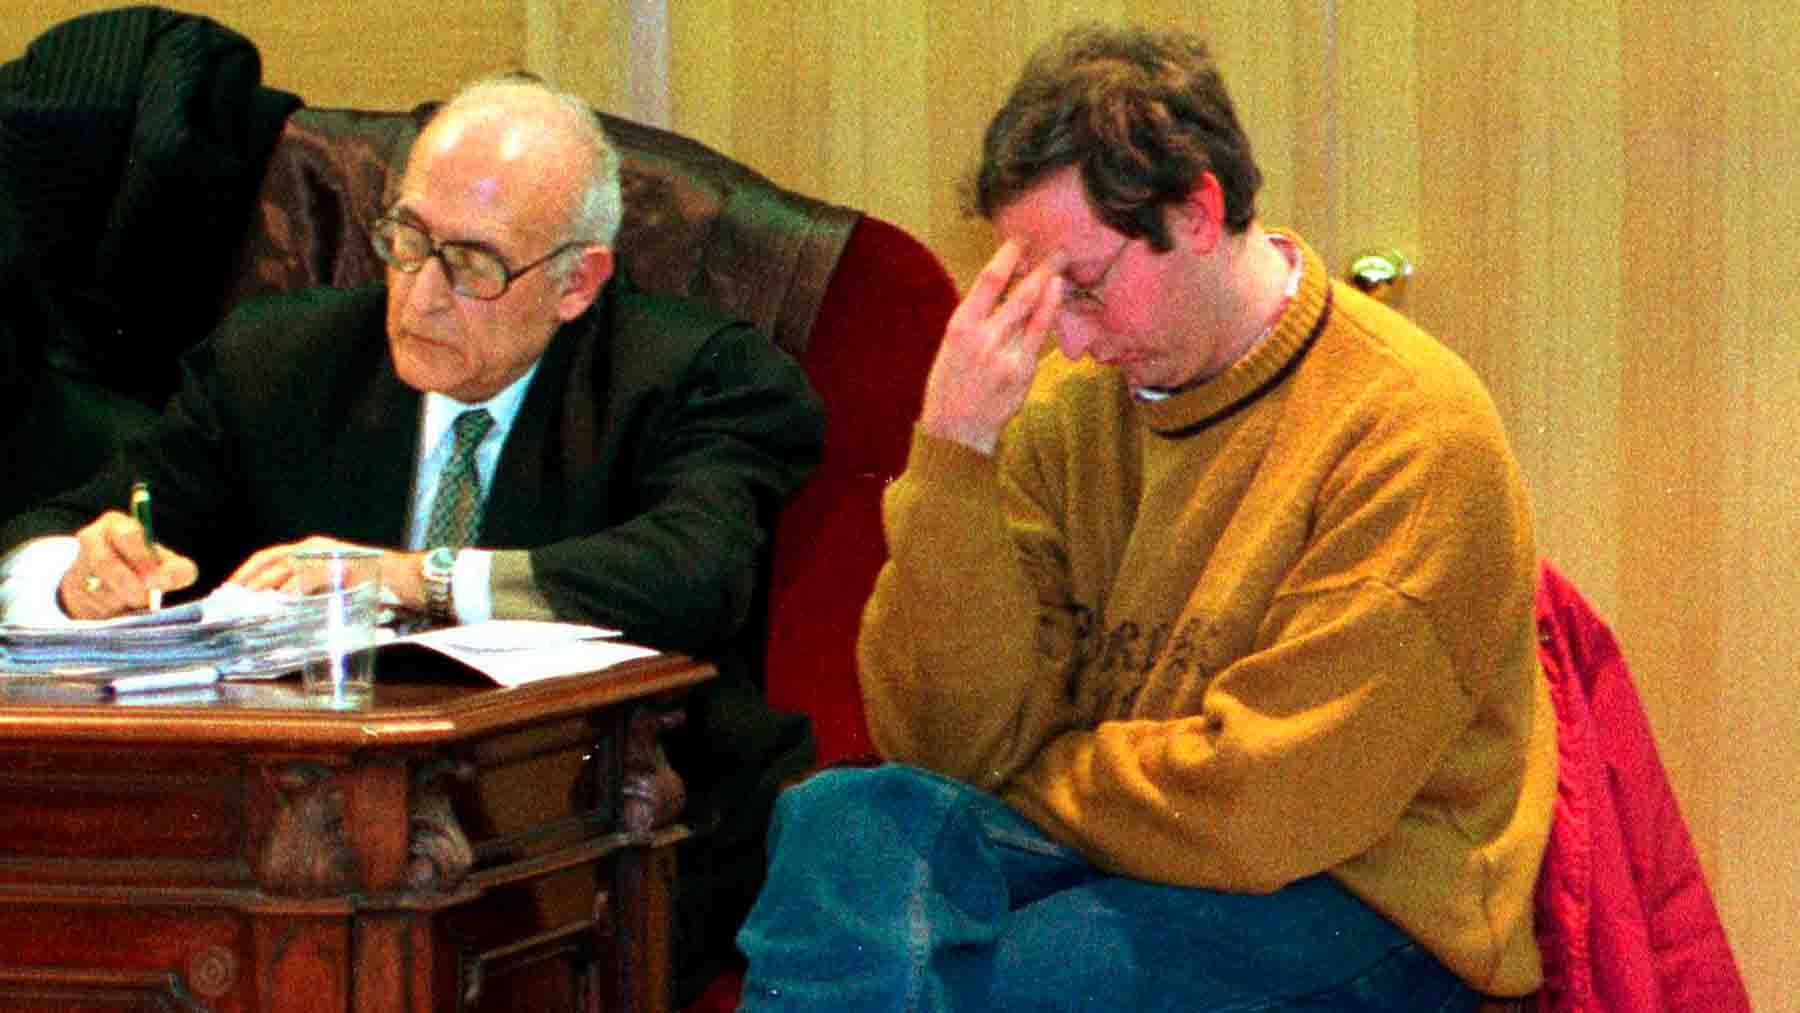 Francisco Javier Almeida en el juicio en el año 2000